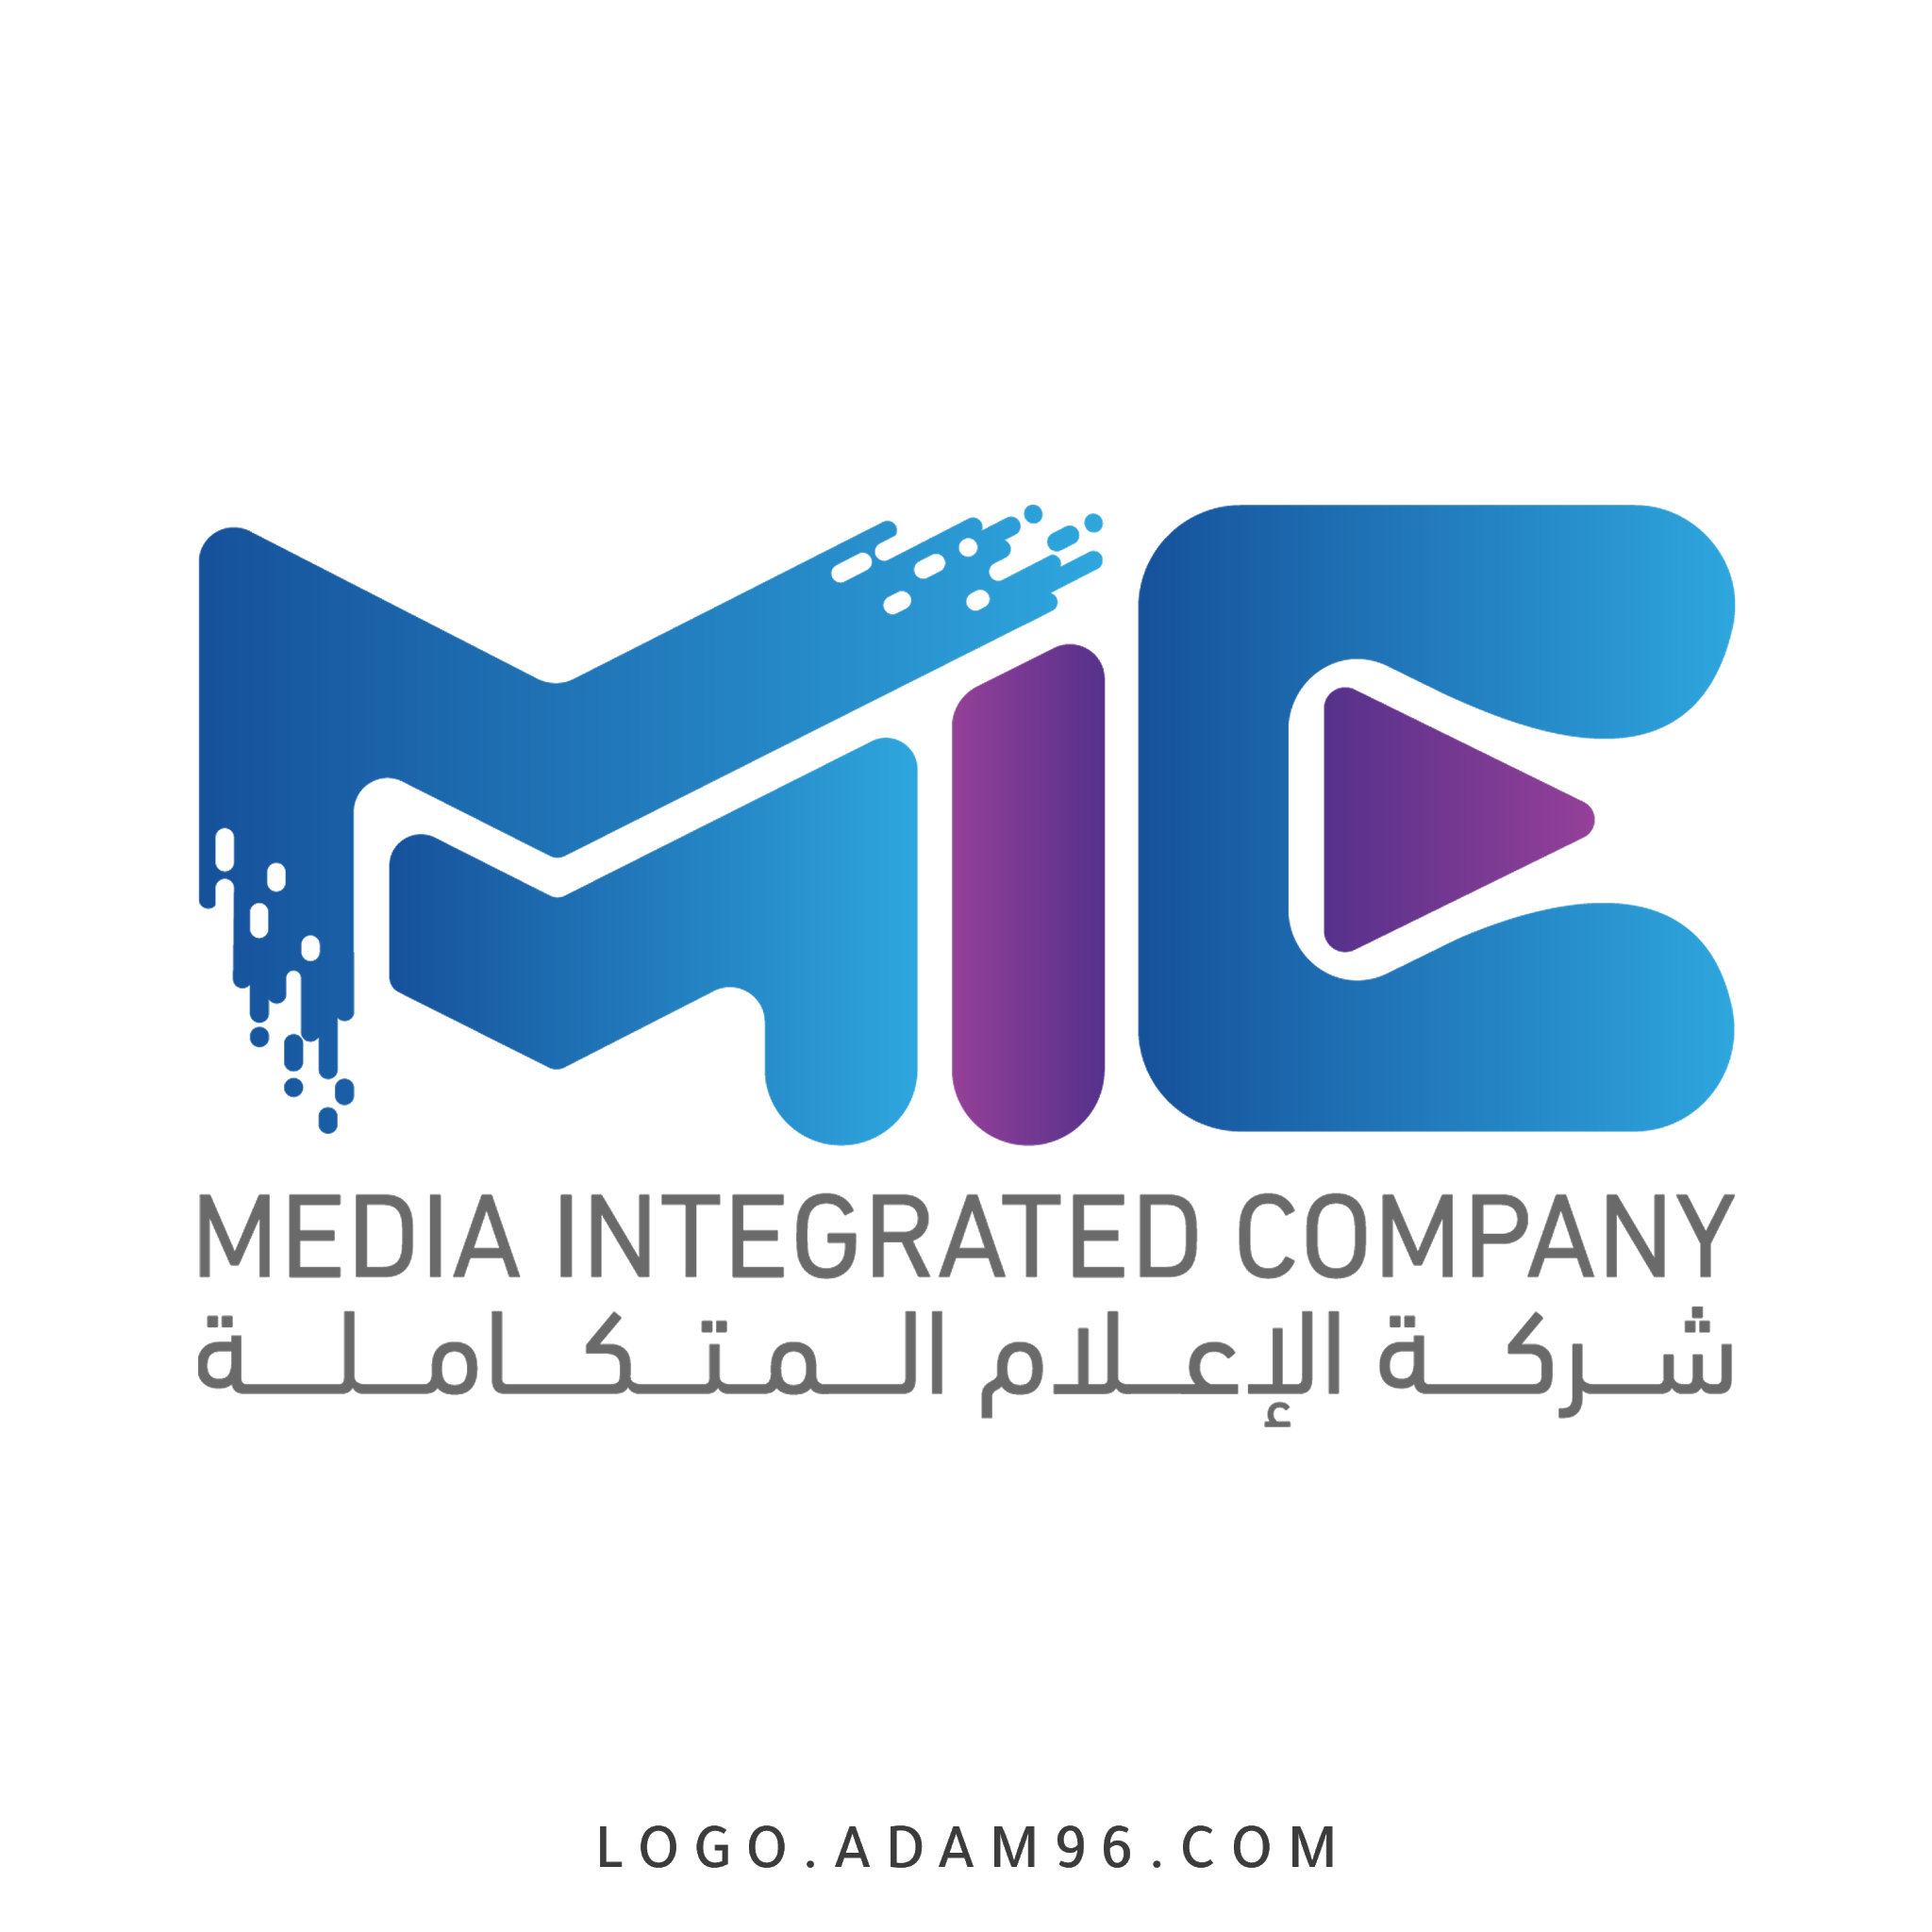 تحميل شعار شركة الإعلام المتكاملة لوجو رسمي عالي الجودة بصيغة PNG